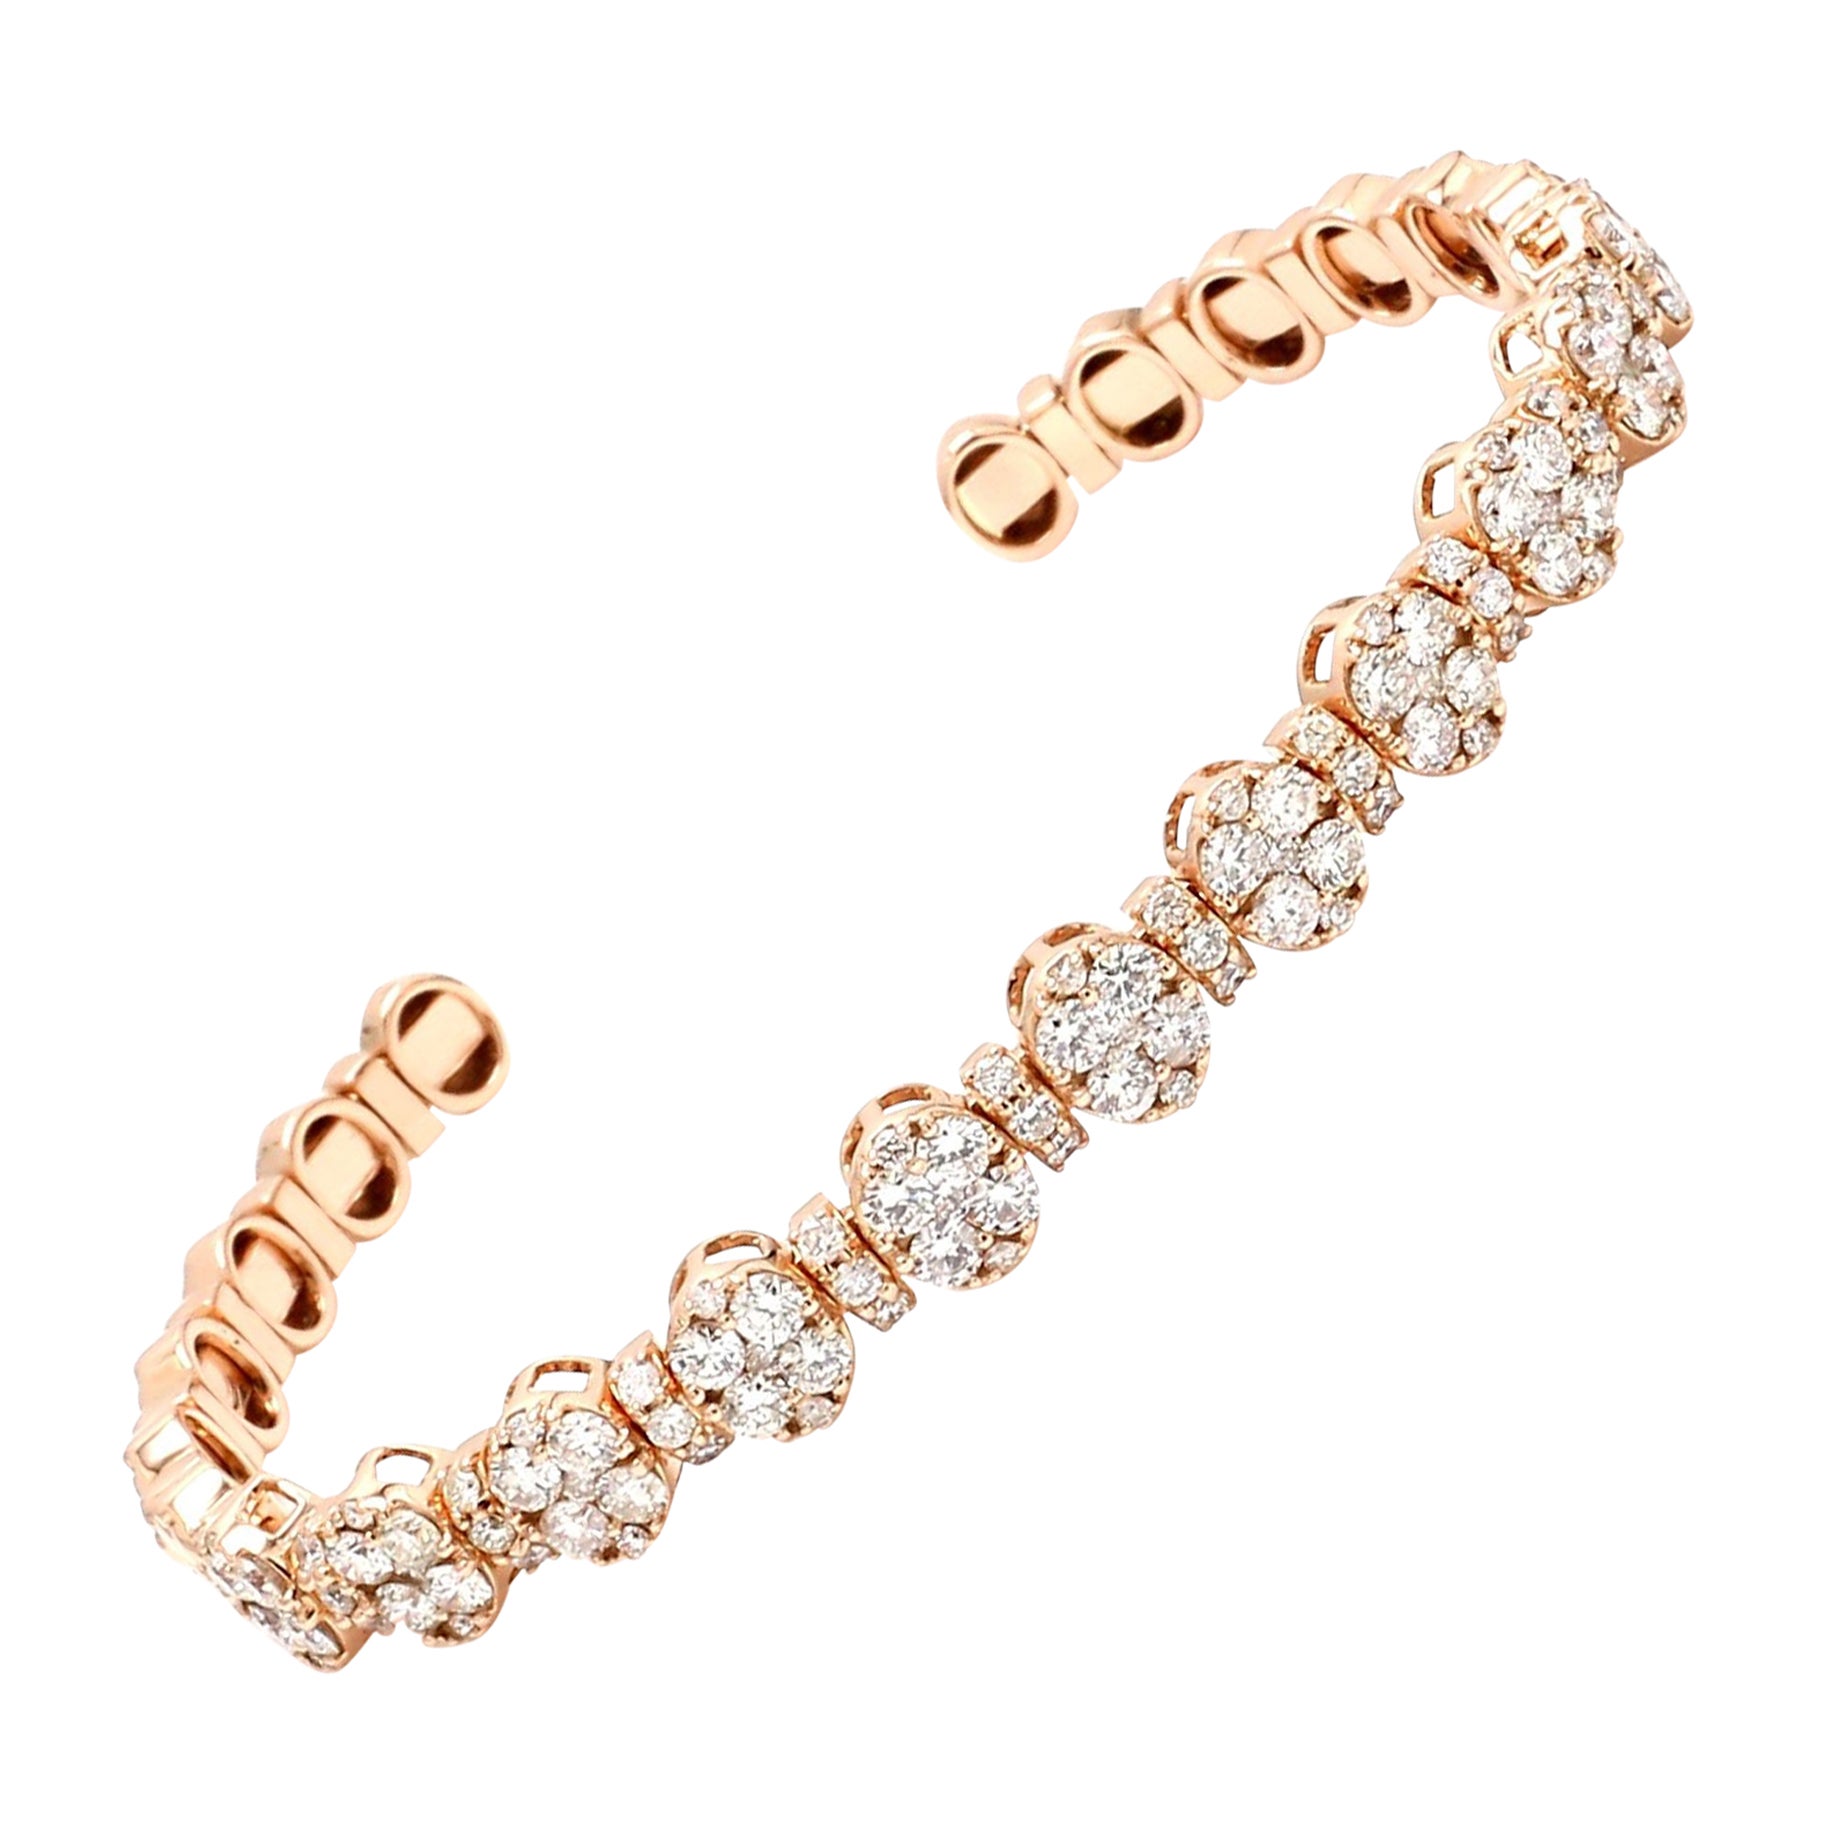 2.80 Carat SI Clarity HI Color Diamond Cuff Bangle Bracelet 18 Karat Rose Gold For Sale